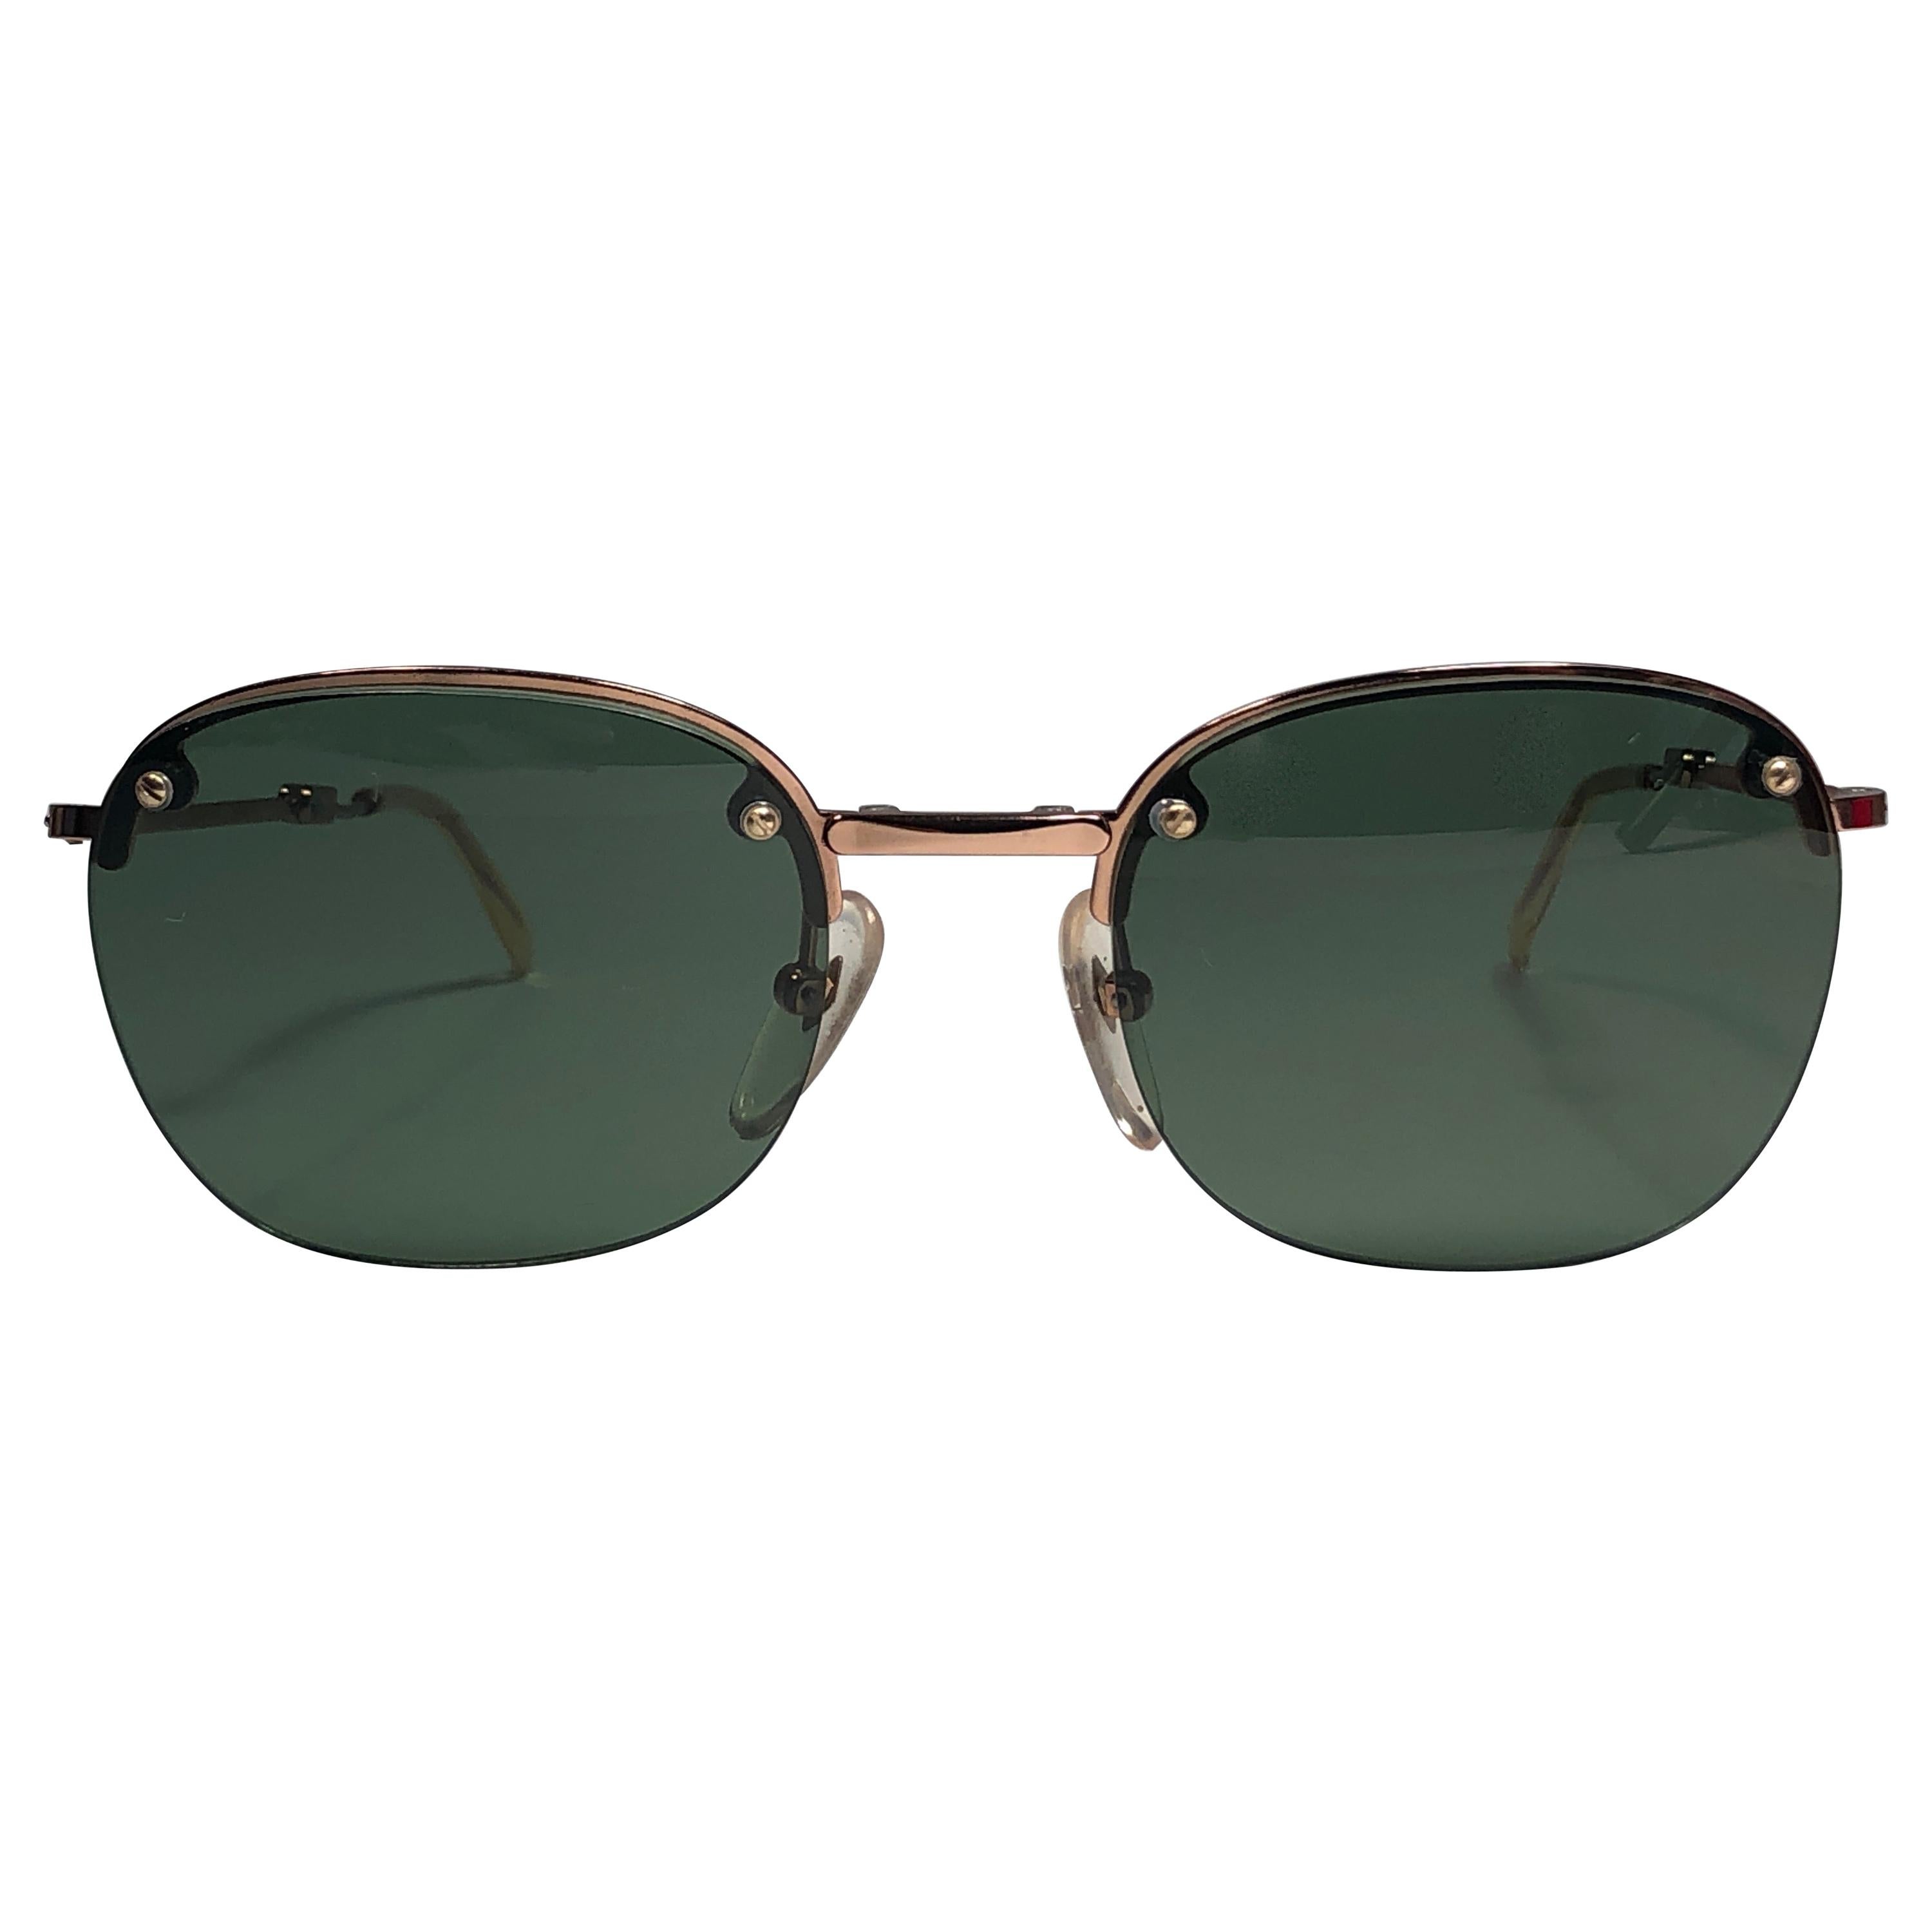 &New Jean Paul Gaultier Halbrahmen faltbare Sonnenbrille.
Smaragdgrüne Gläser, die einen tragbaren JPG-Look vervollständigen.

Erstaunliches Design mit starken, aber raffinierten Details.
Design und Herstellung in den 1990er Jahren.
Neu, nie